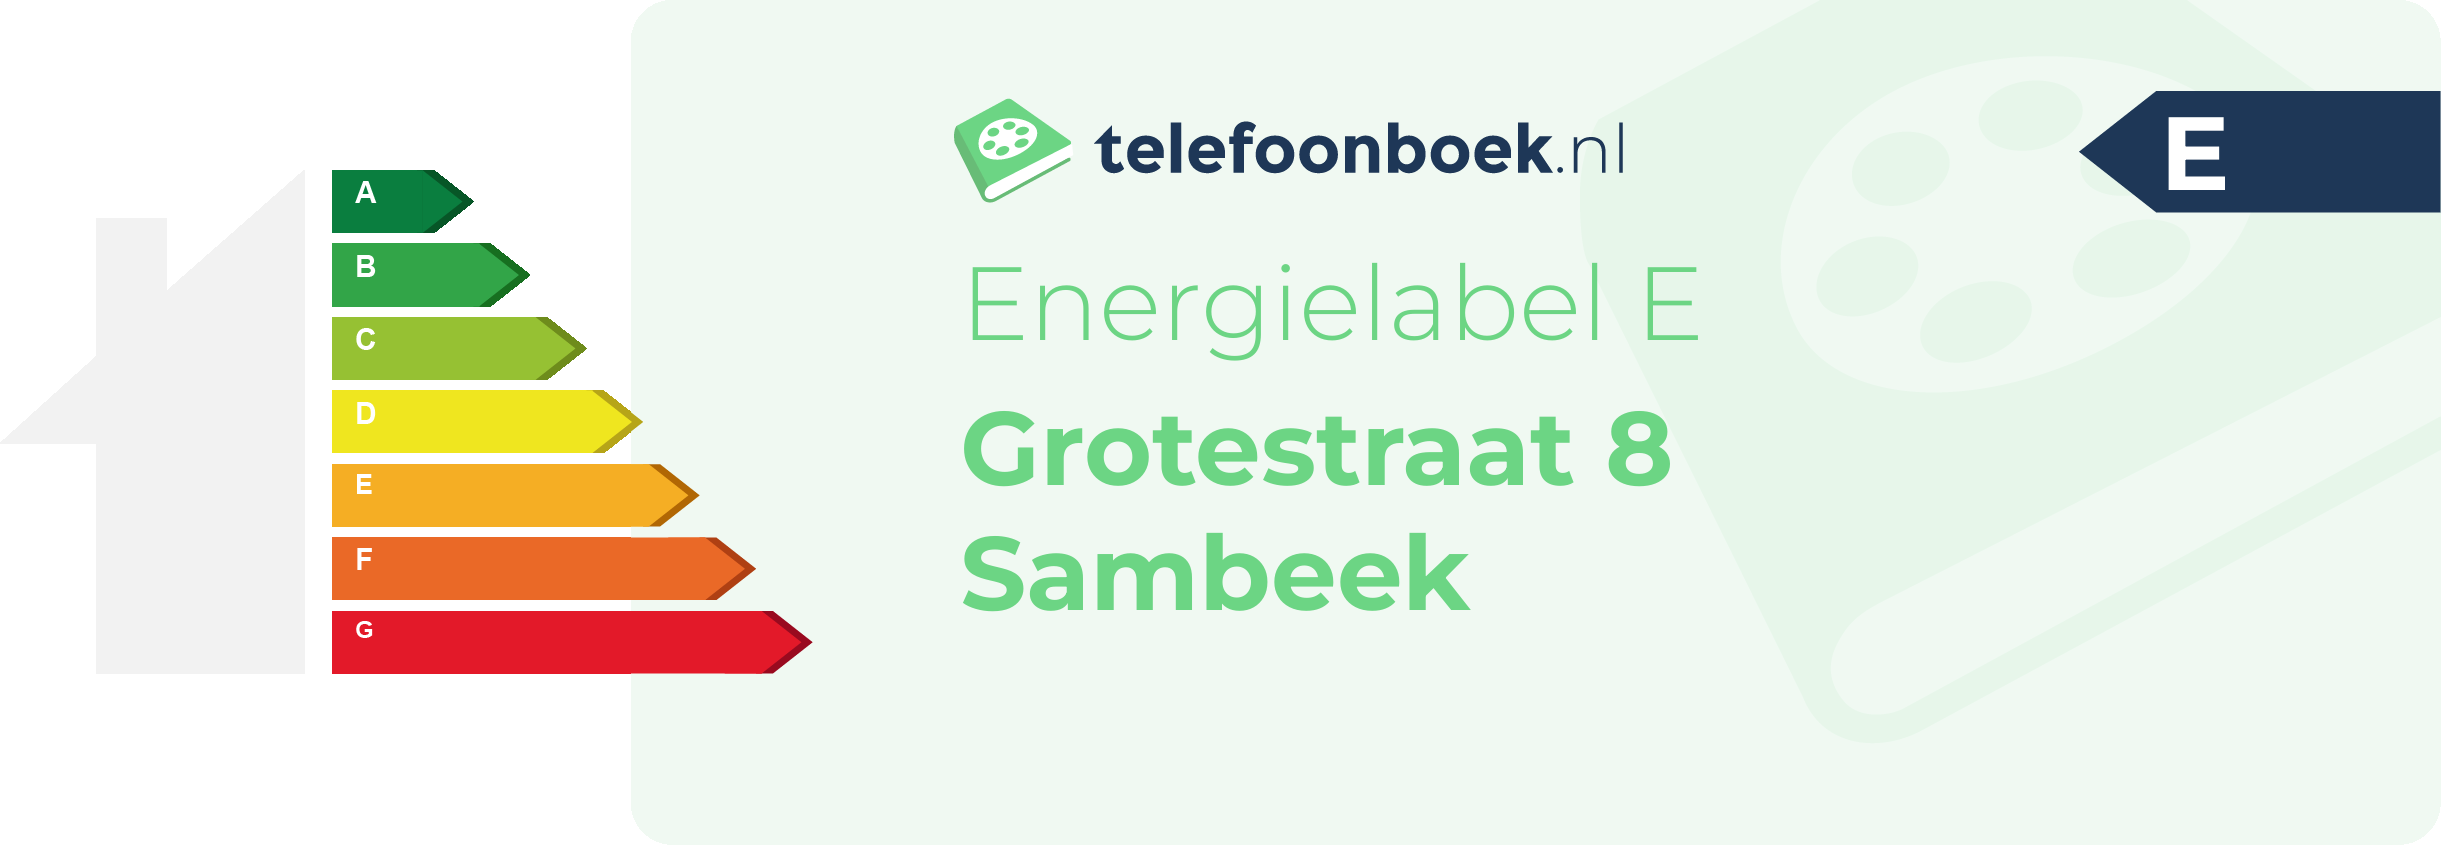 Energielabel Grotestraat 8 Sambeek